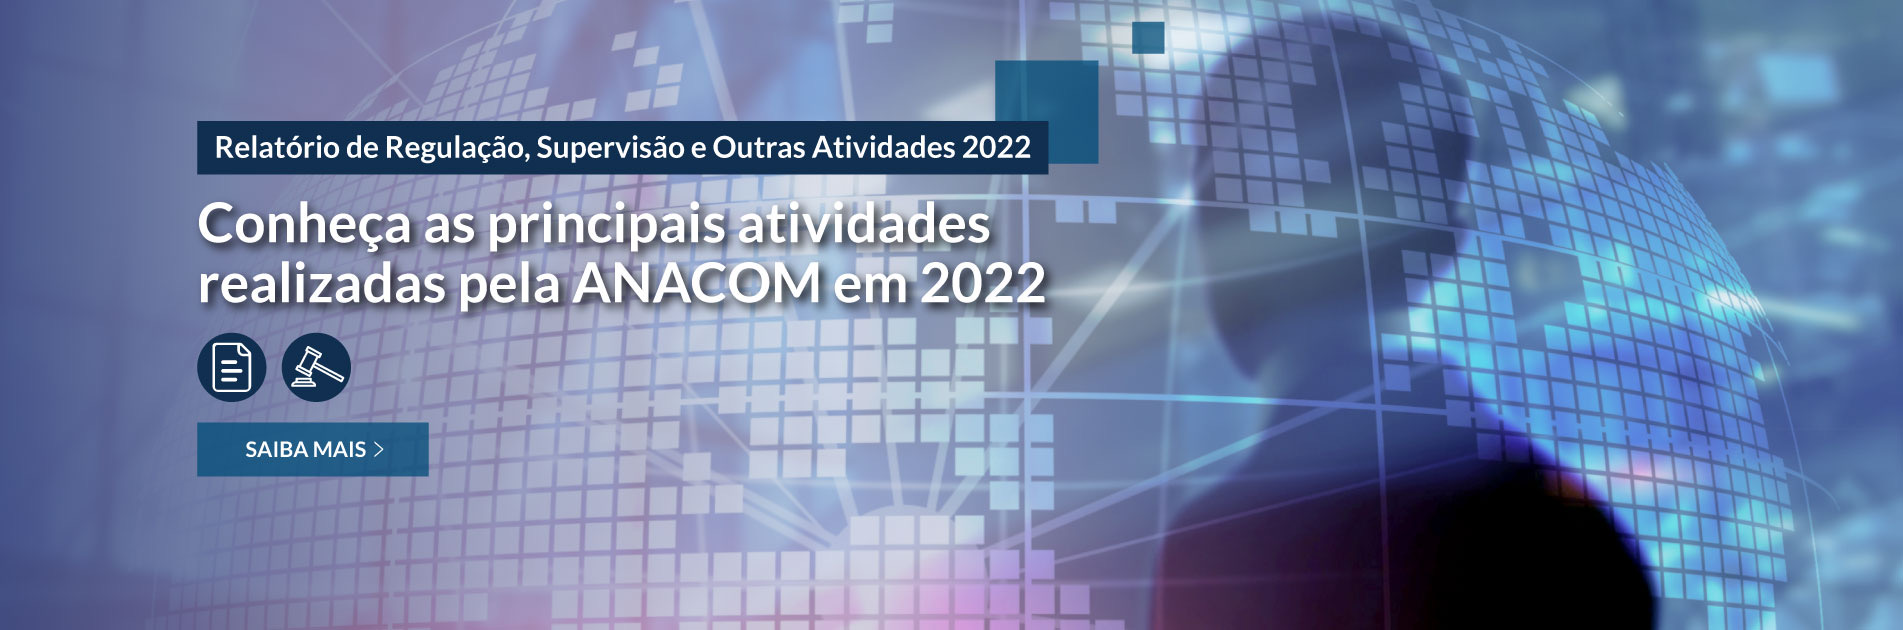 Conheça as principais atividades realizadas pela ANACOM em 2022